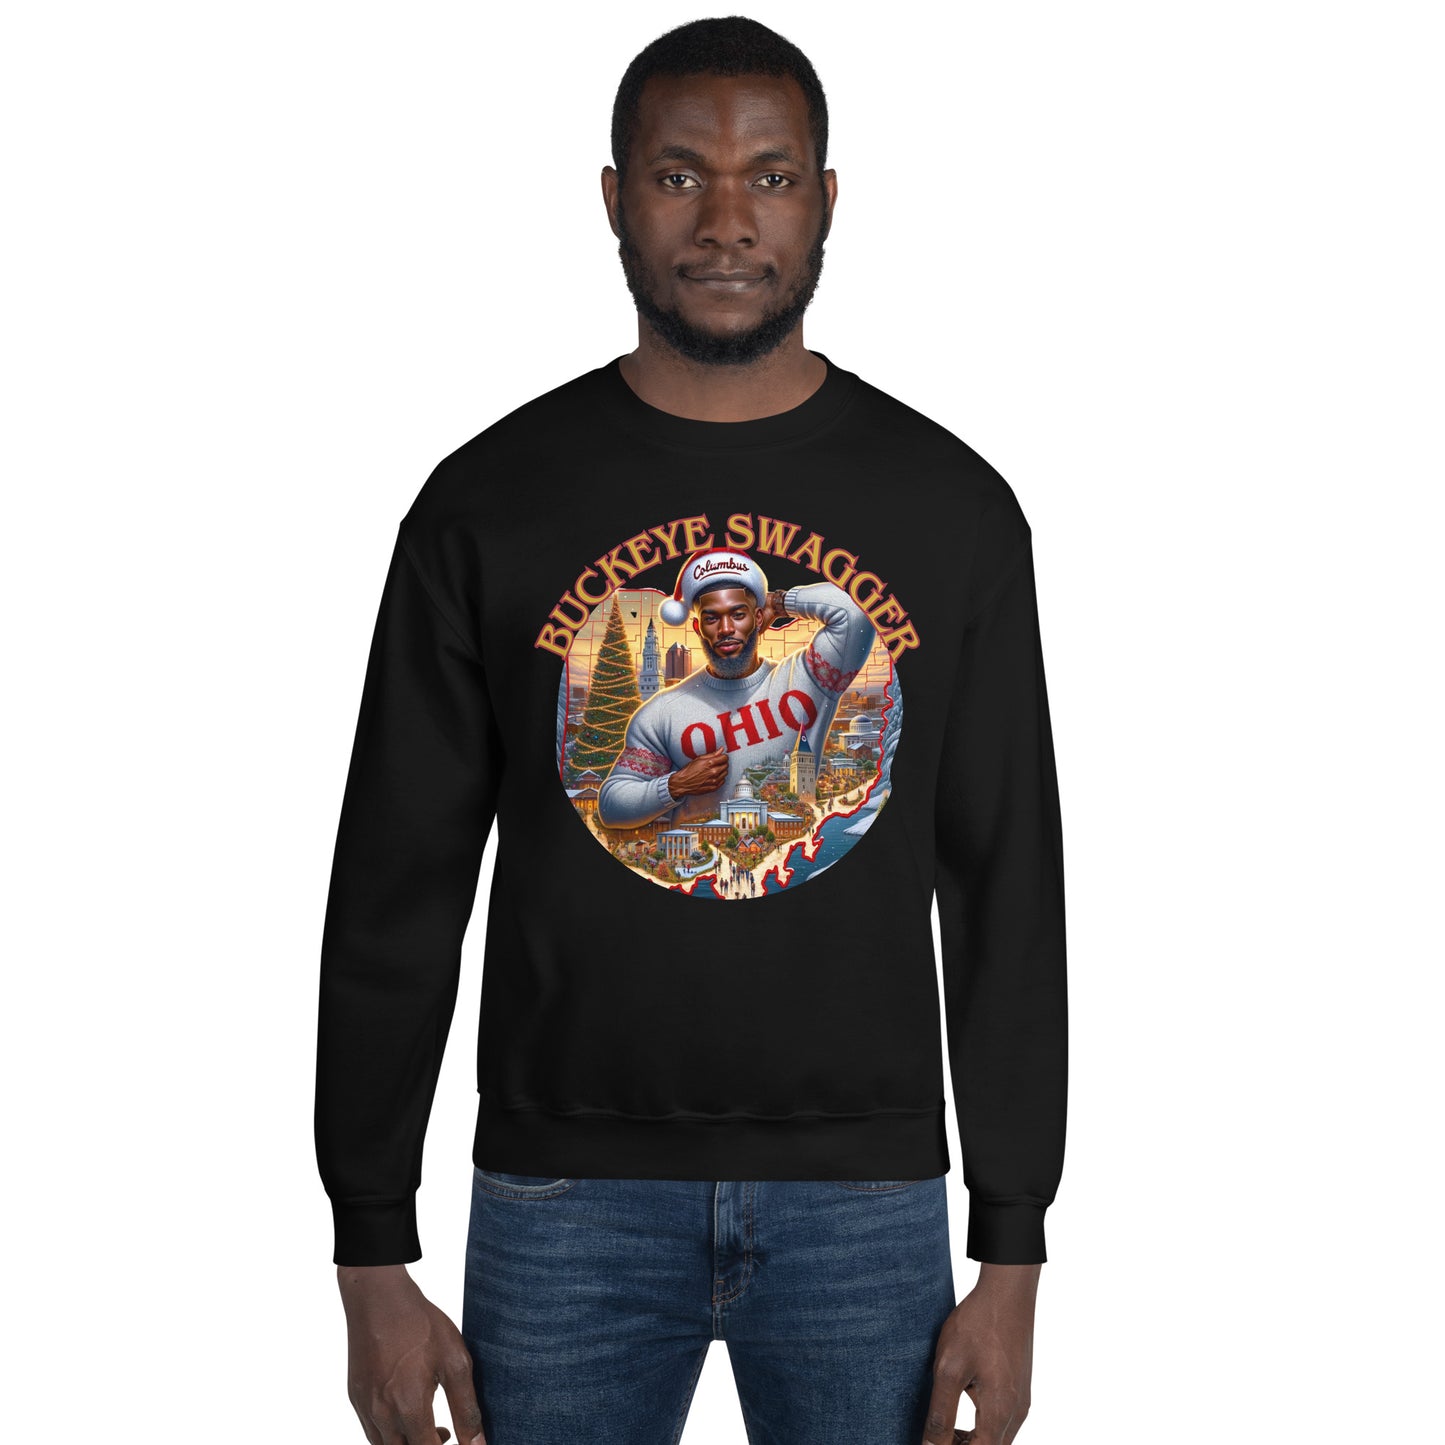 "Buckeye Swagger" Sweatshirt.